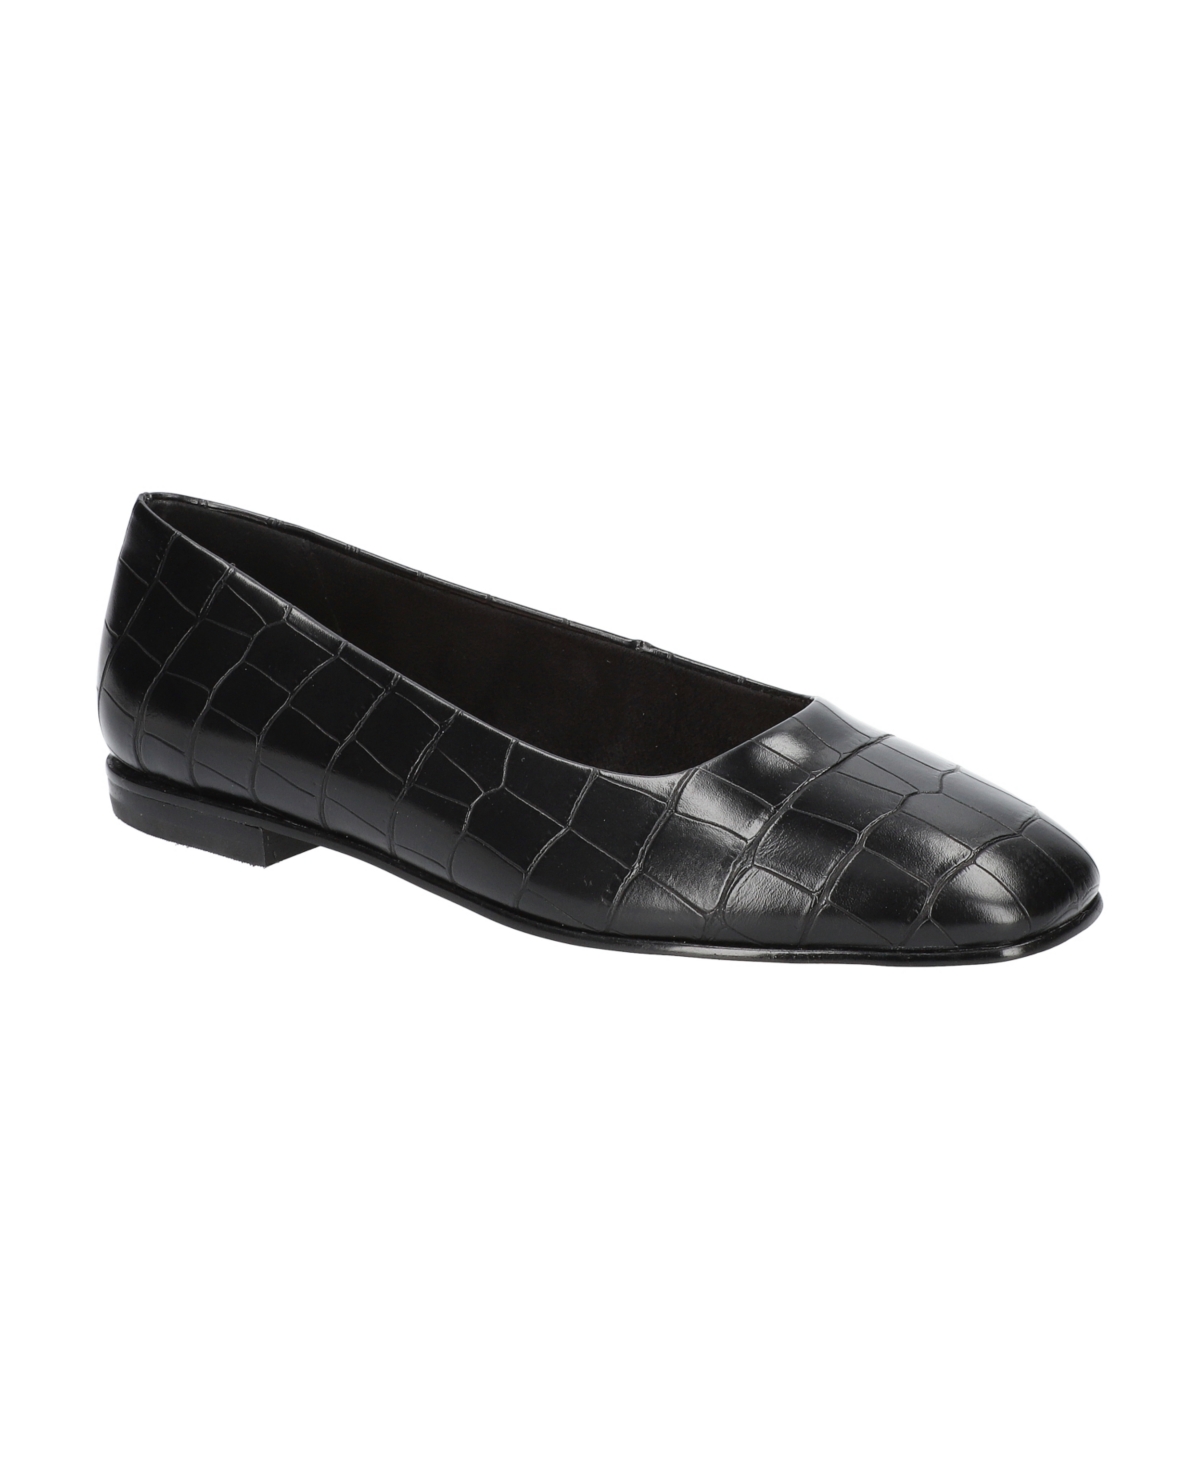 Women's Kimiko Square Toe Flats - Black Faux Leather